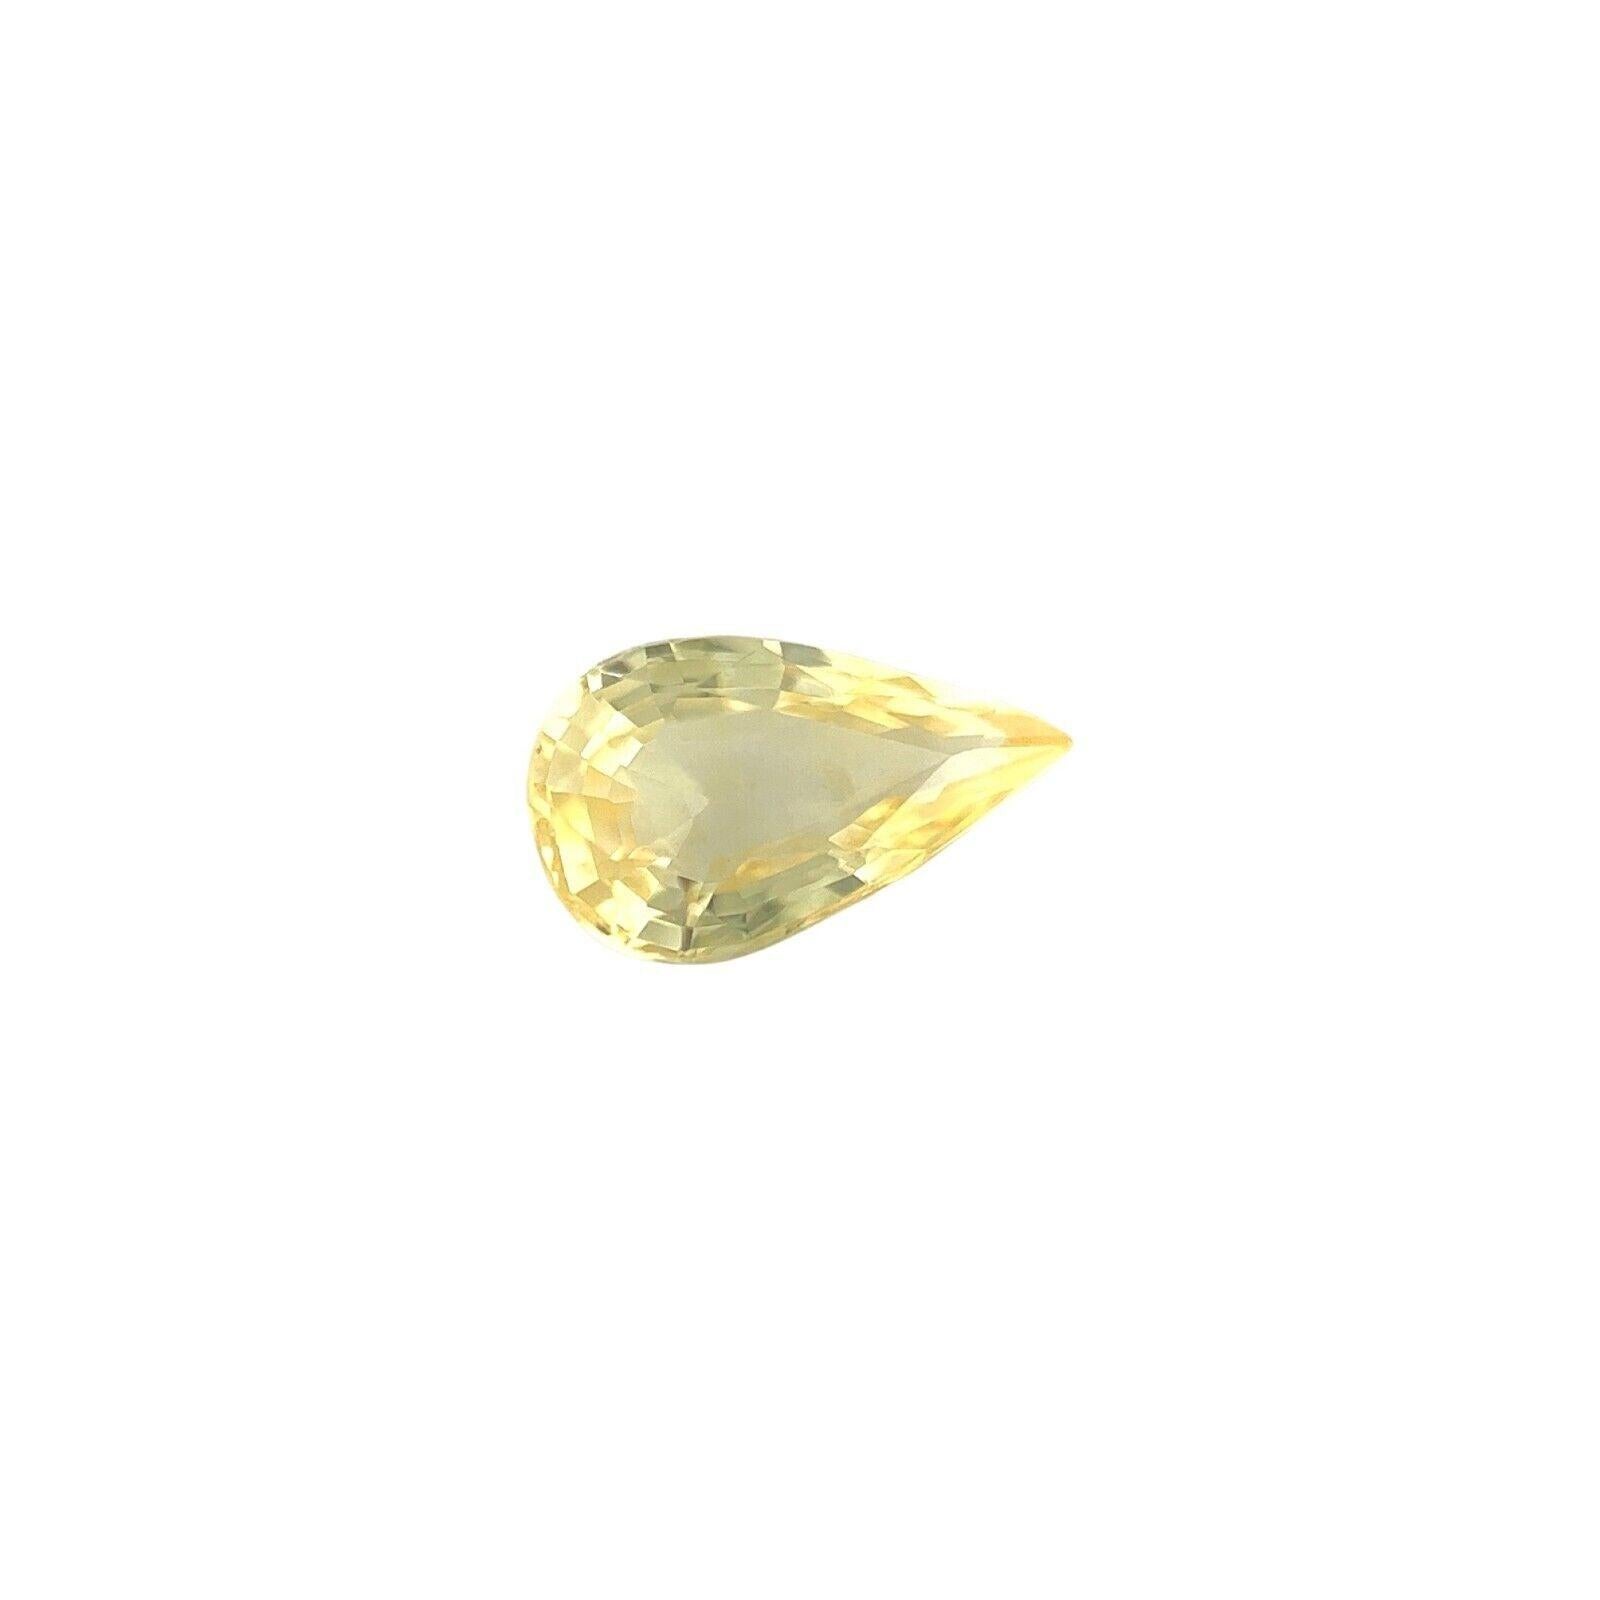 GIA Certified 1.28Ct Ceylon Sapphire Untreated Vivid Yellow Pear Cut

Saphir jaune naturel non traité certifié par la GIA.
Saphir non chauffé de 1,28 carat d'une belle couleur jaune vif.
Elle présente également une excellente clarté, une pierre très